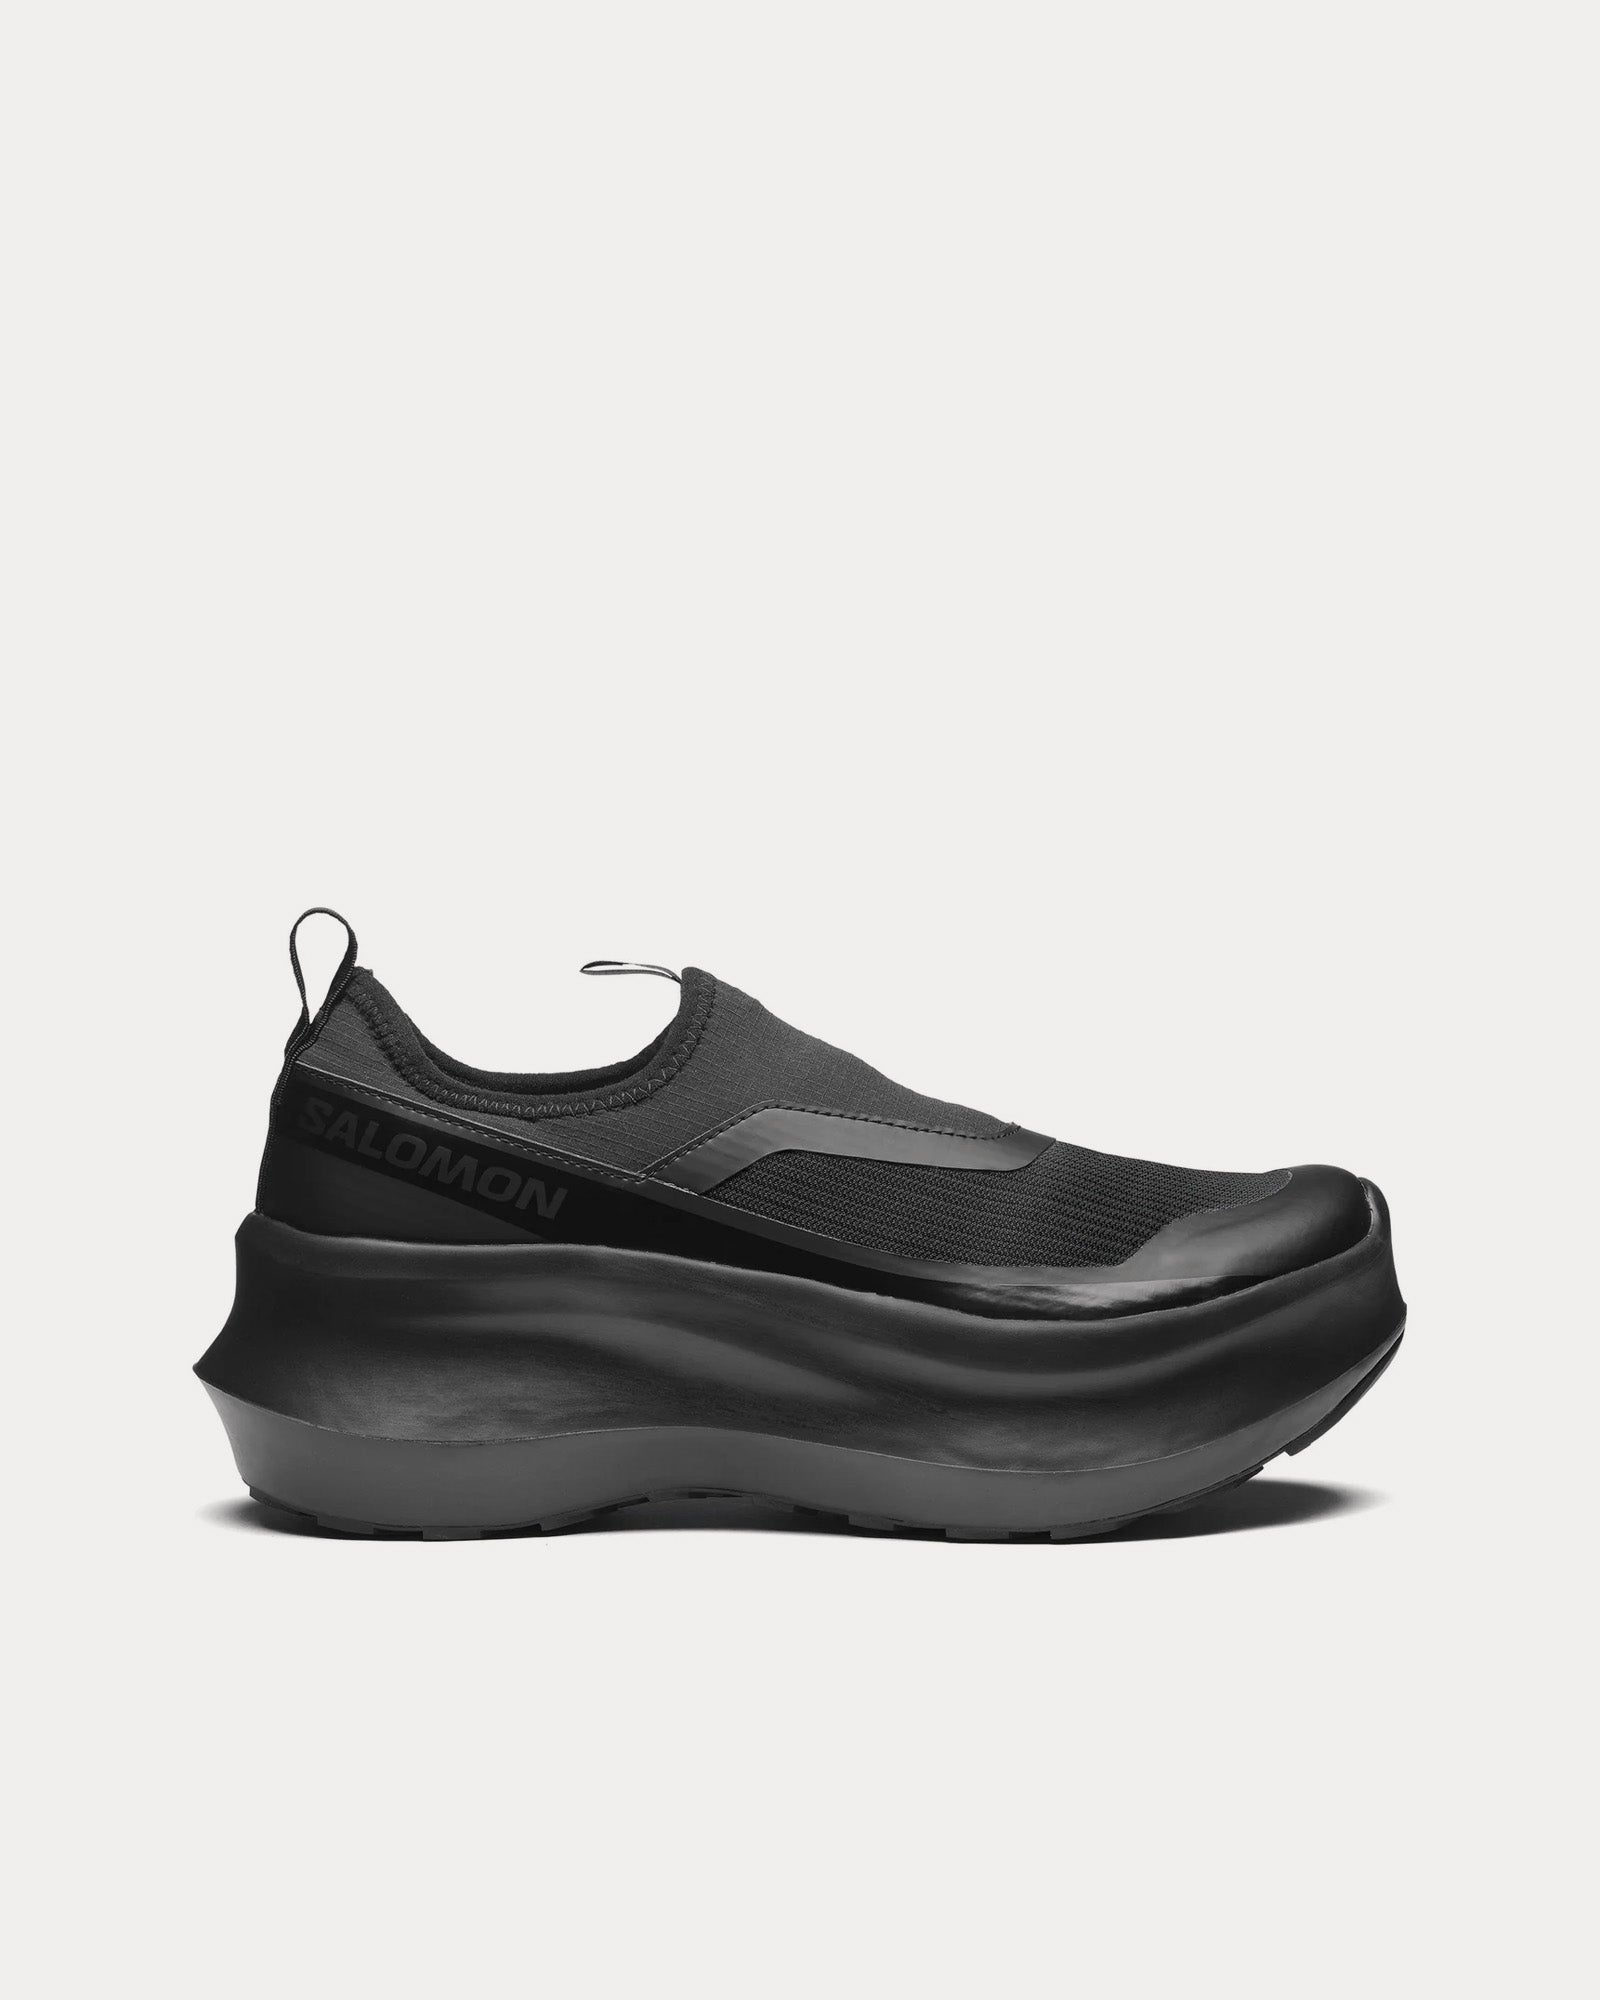 Salomon x Comme des Garçons - Platform Black Slip On Sneakers